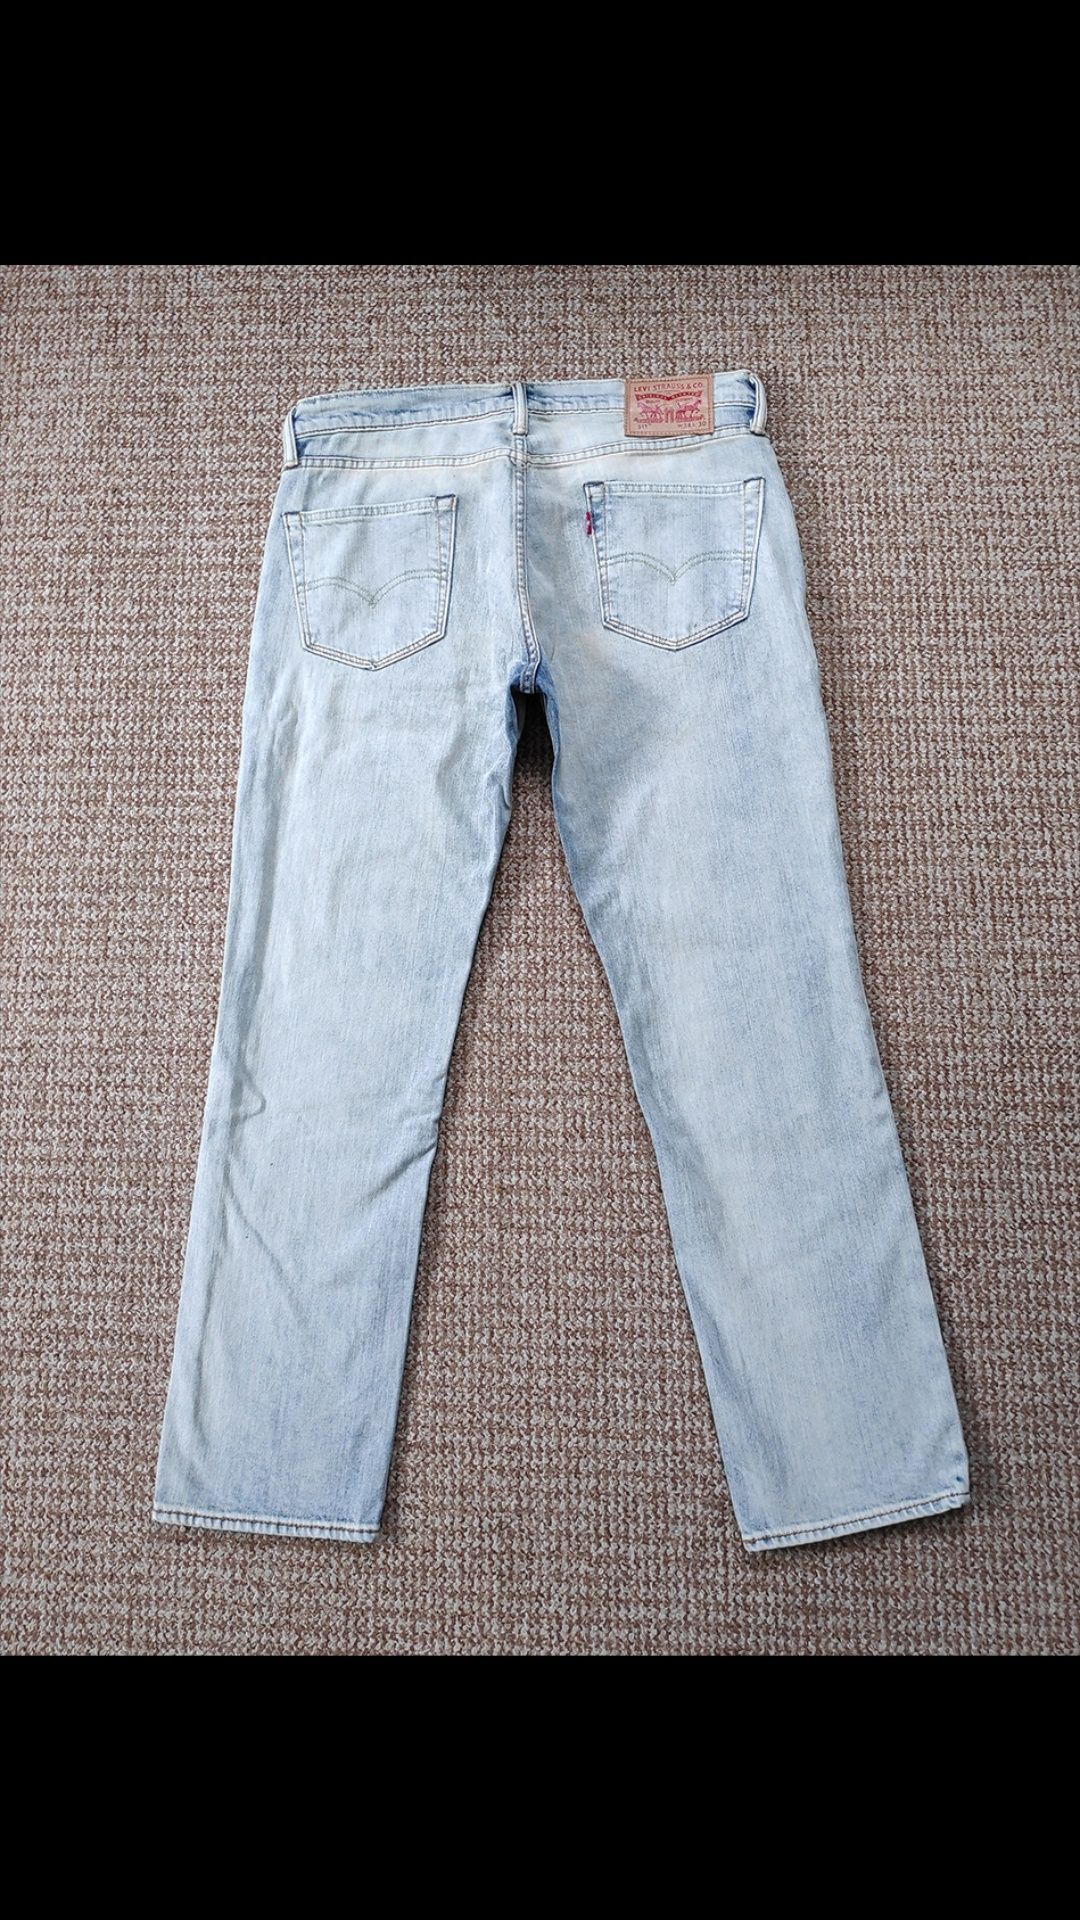 LEVI'S 511 Slim Fit джинсы Оригинал W34 L30 как новые